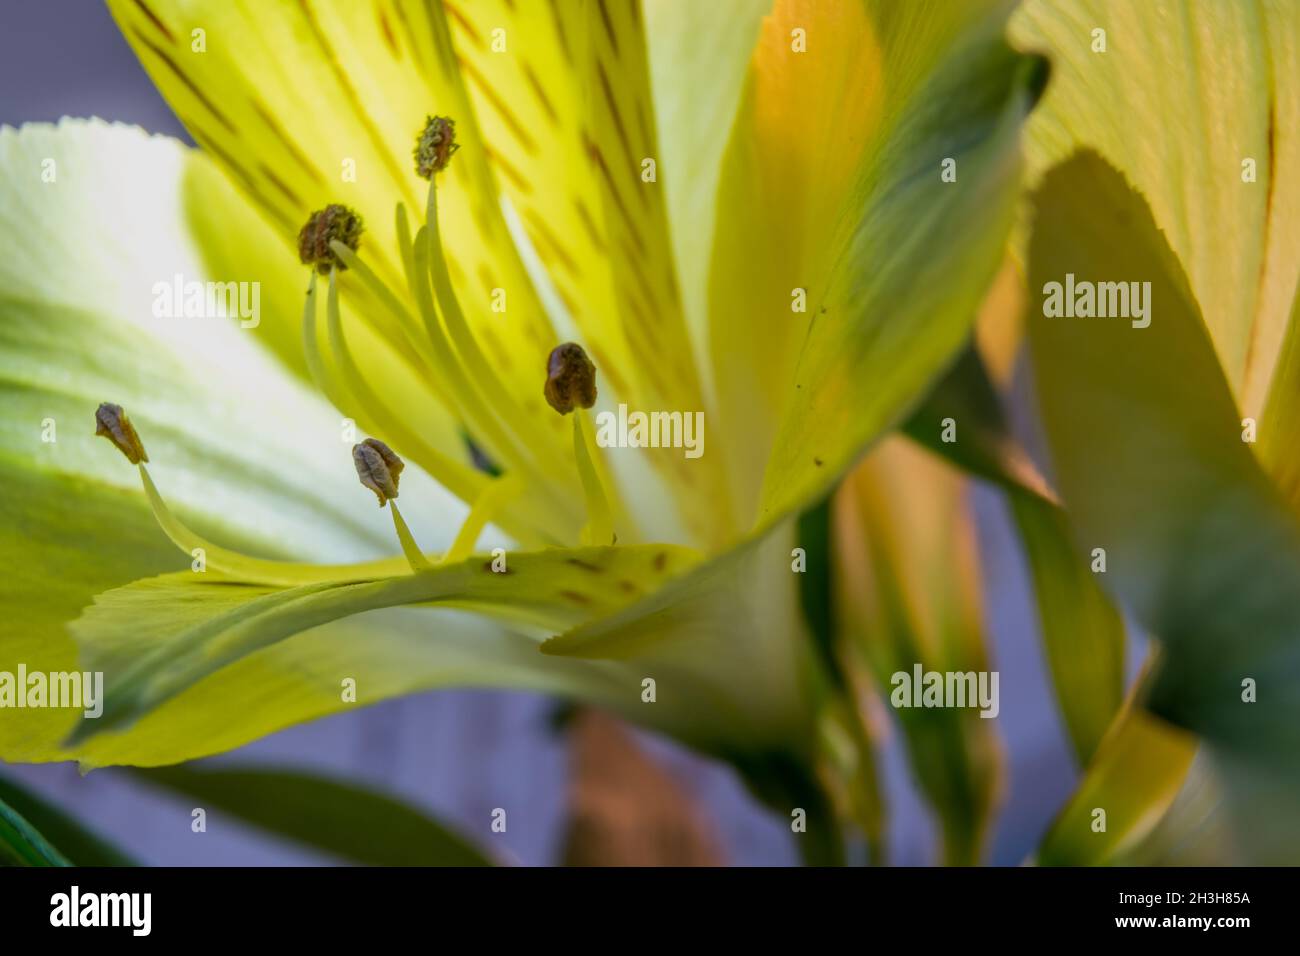 Macro imagen de la flor de alstroemeria amarilla con retroiluminación, con fondo azul borroso y tallos verdes complementan la composición Foto de stock